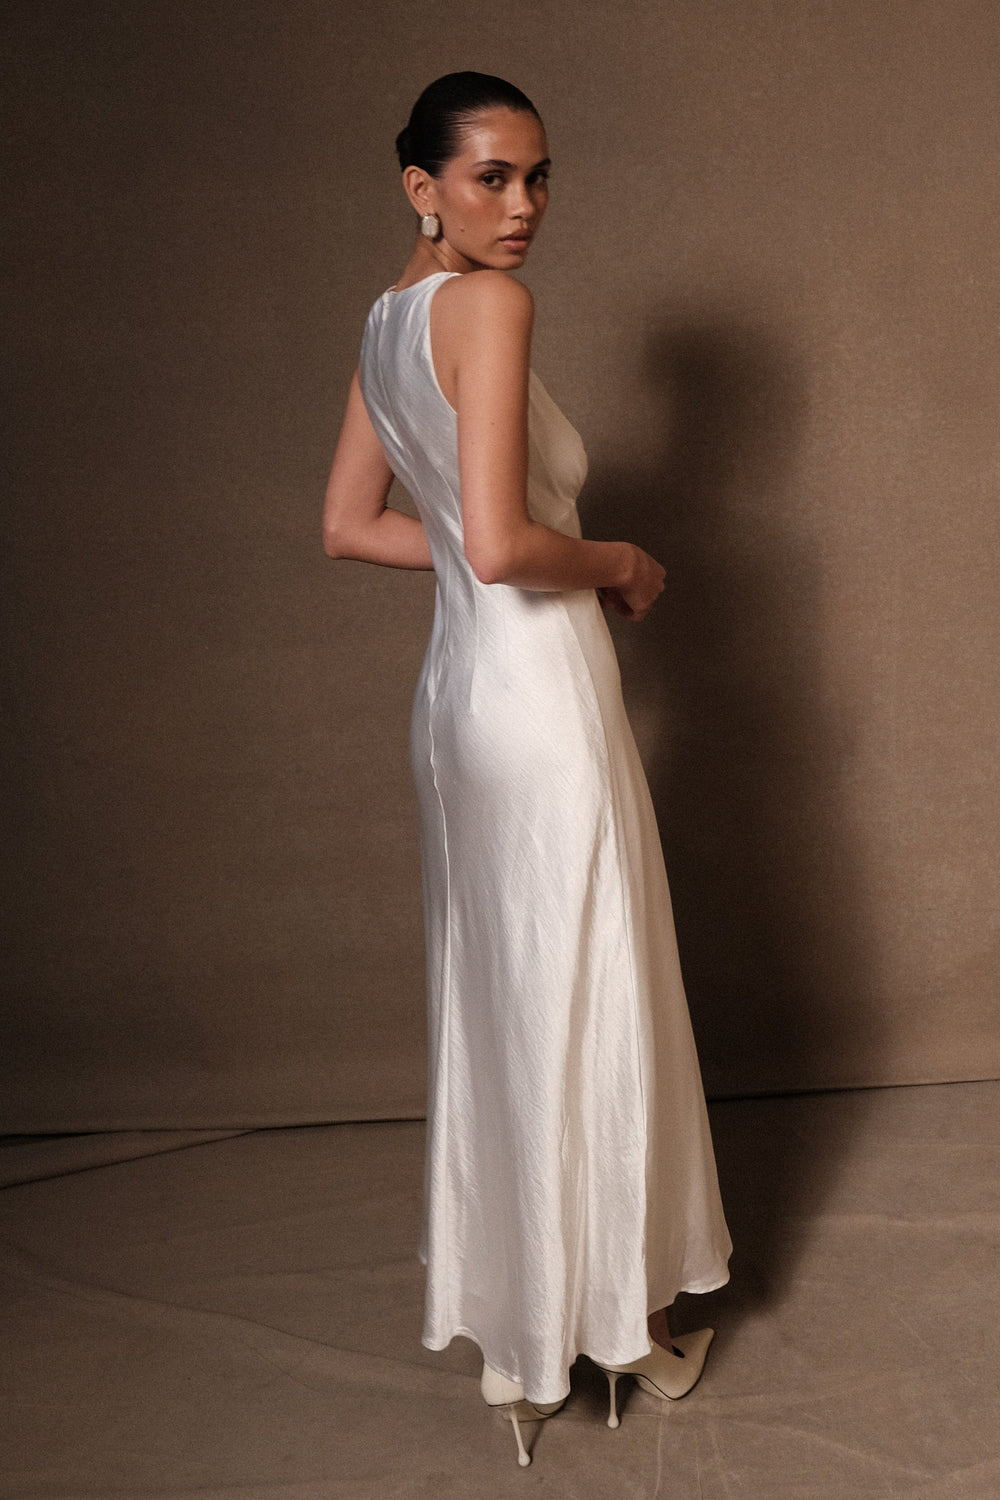 Meghan Short Sleeve Satin Maxi Dress - Ivory